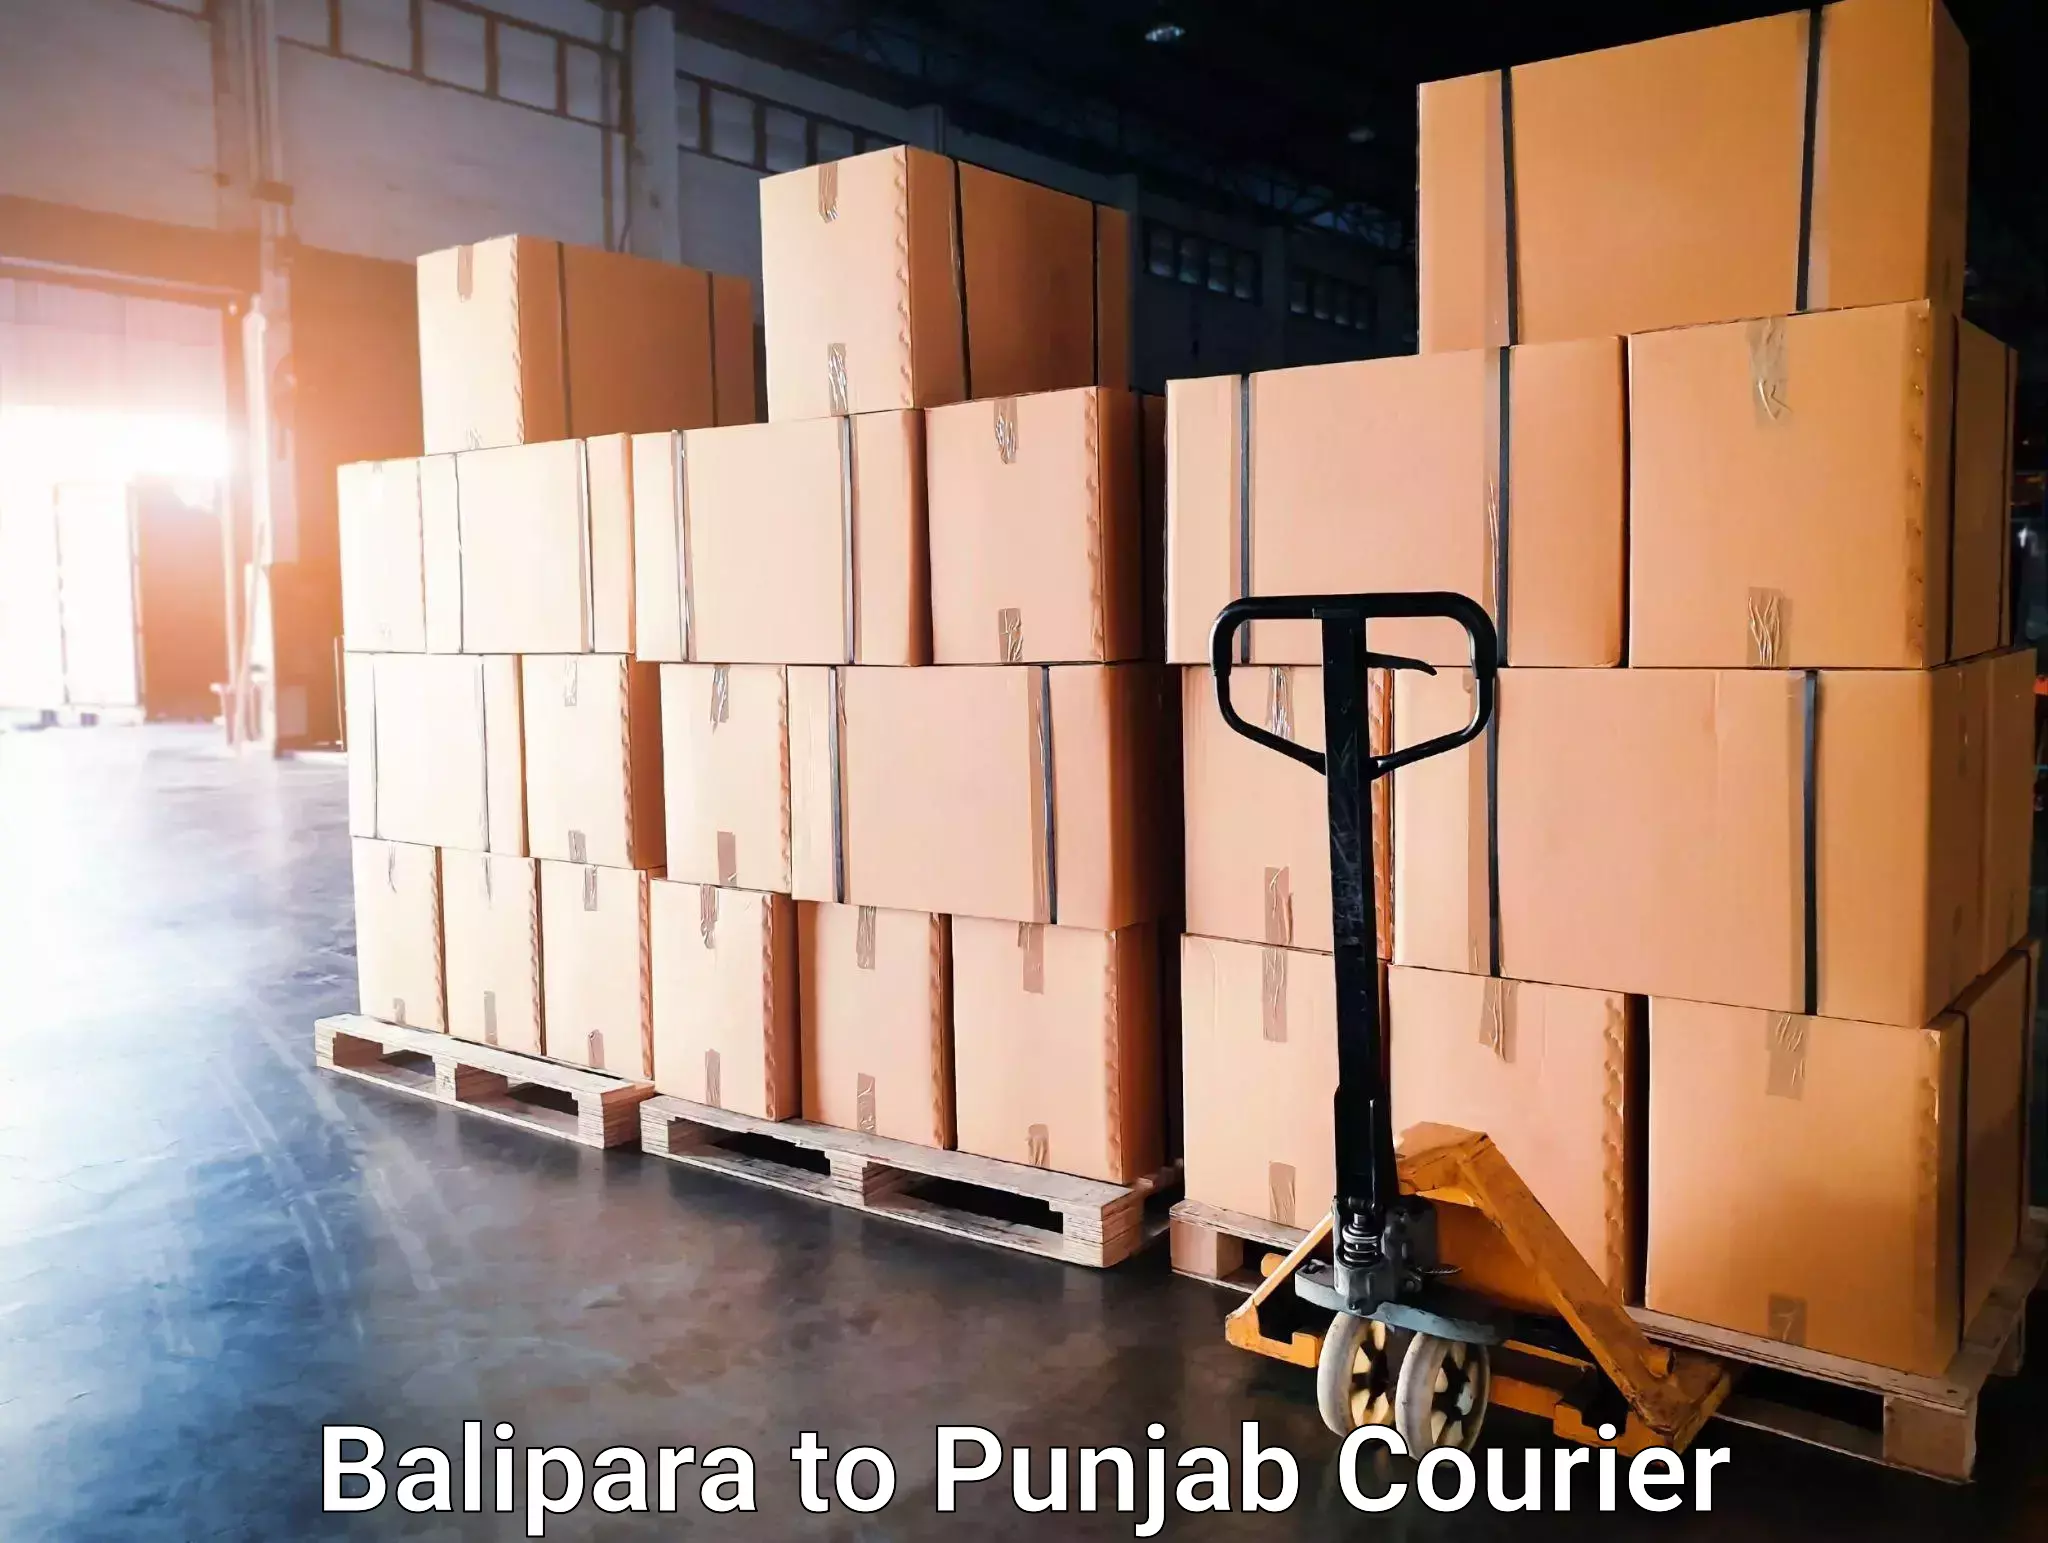 High-speed parcel service Balipara to Punjab